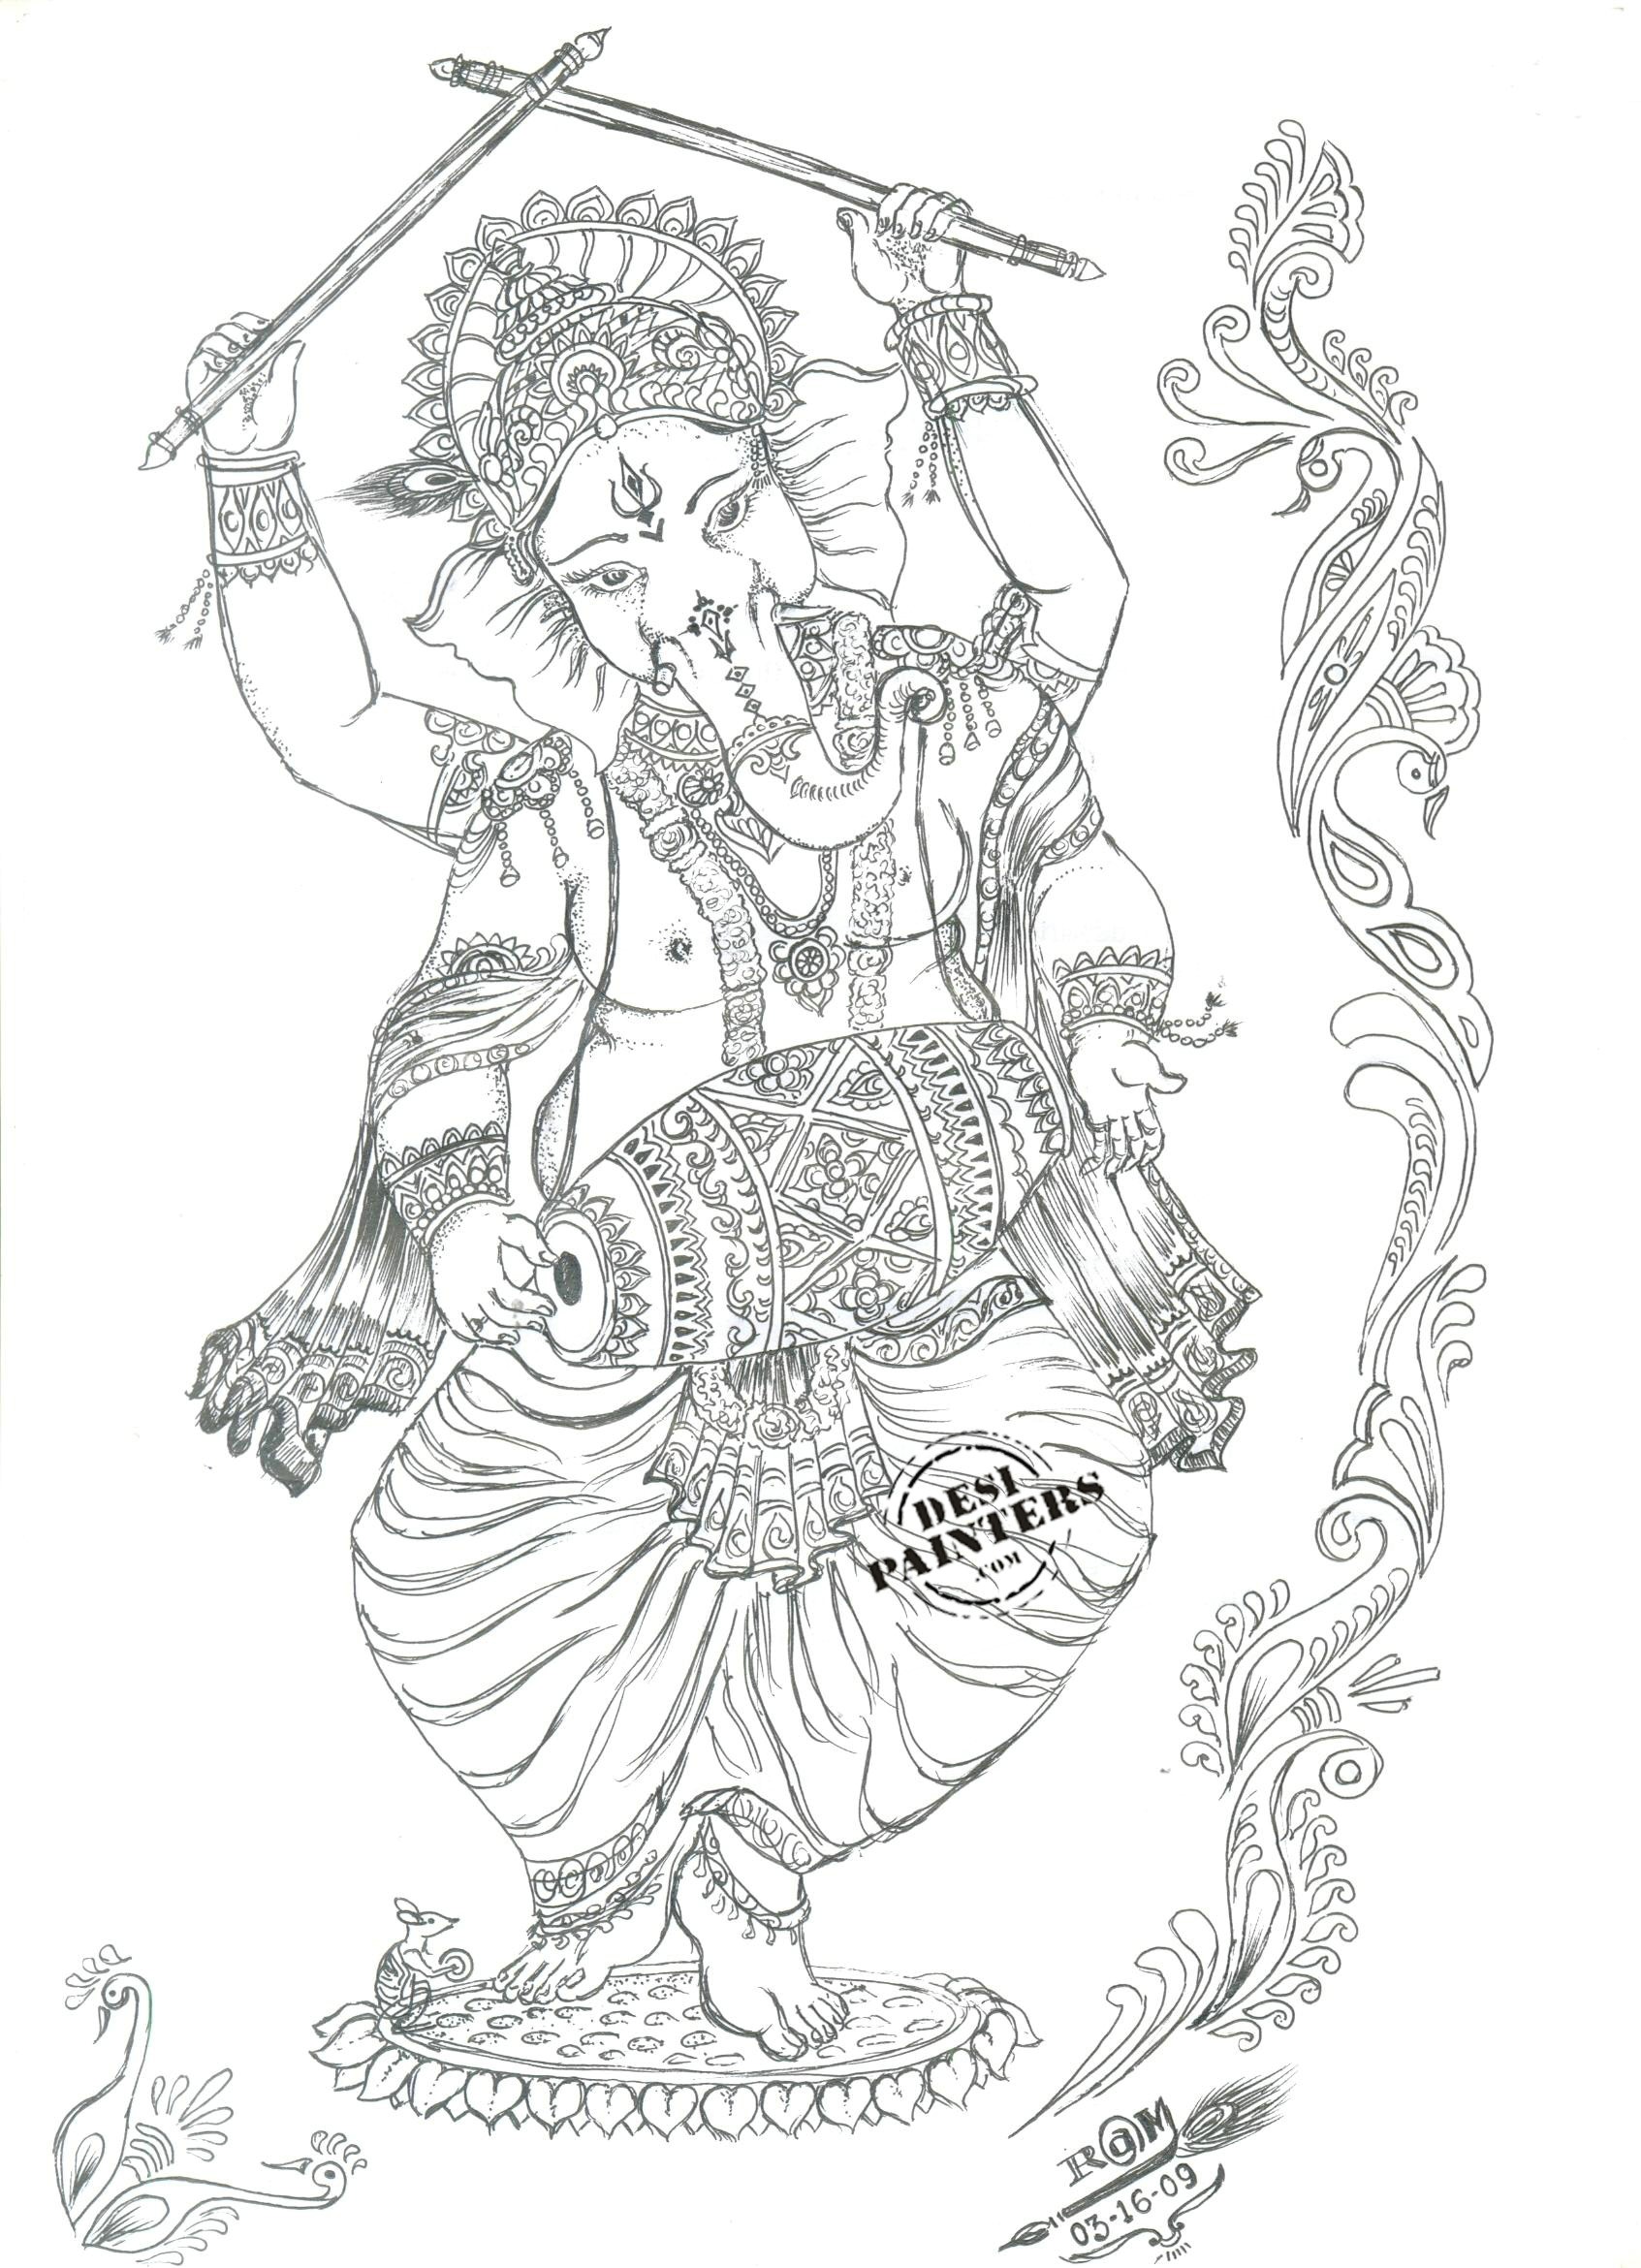 Ganesh Images  Free Download on Freepik